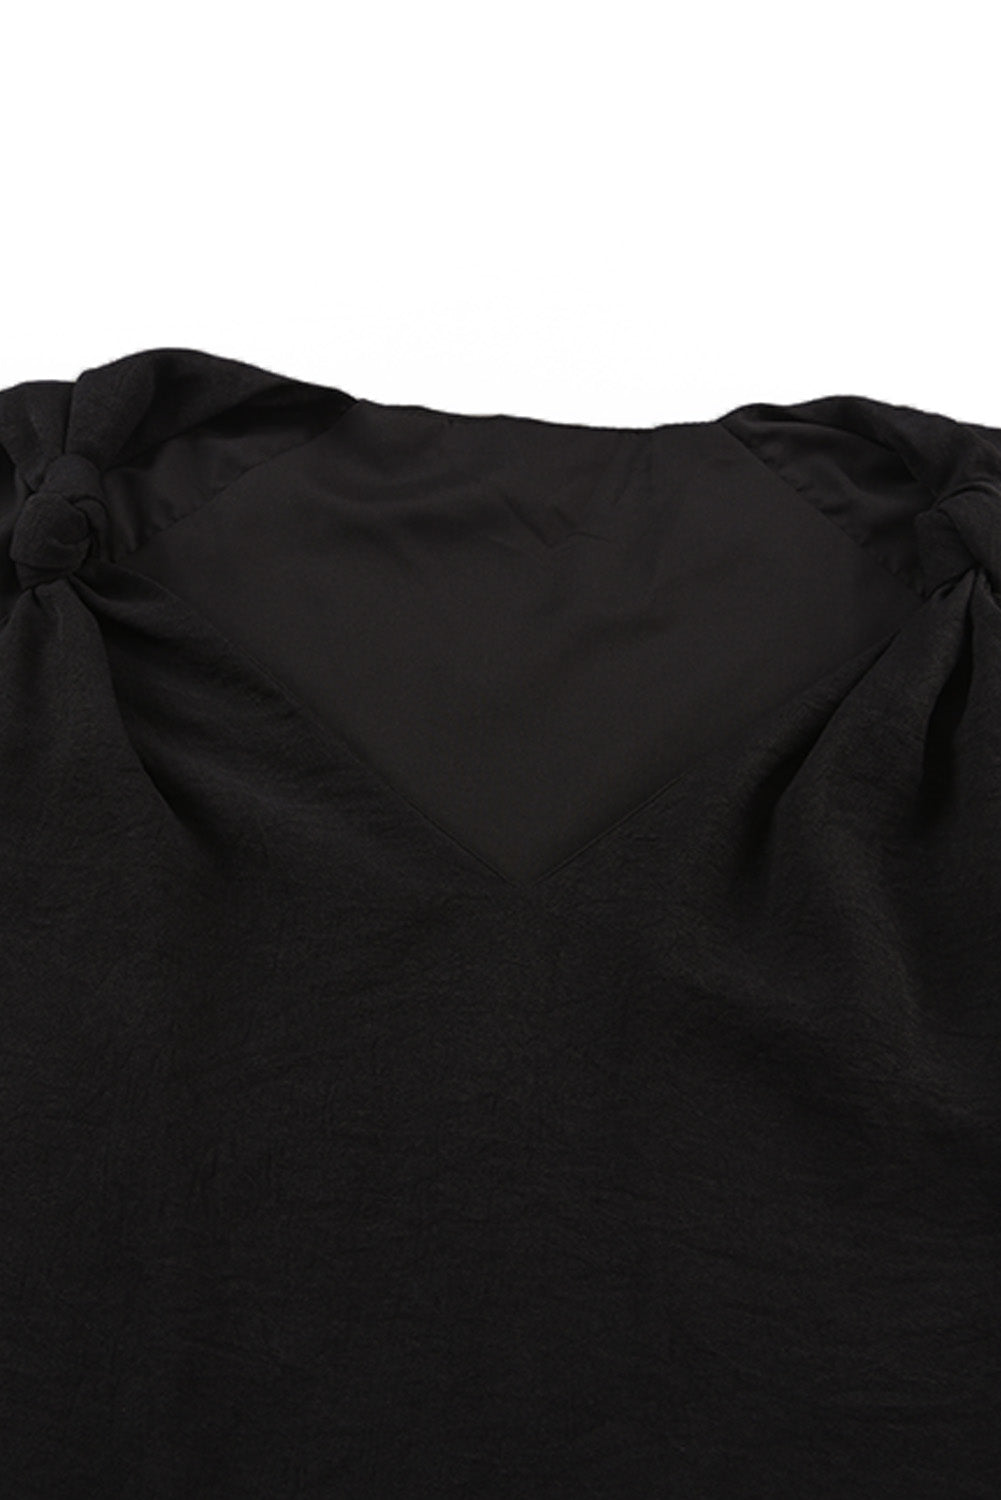 Black V Neck Knotted Shoulder Sleeveless Shirt